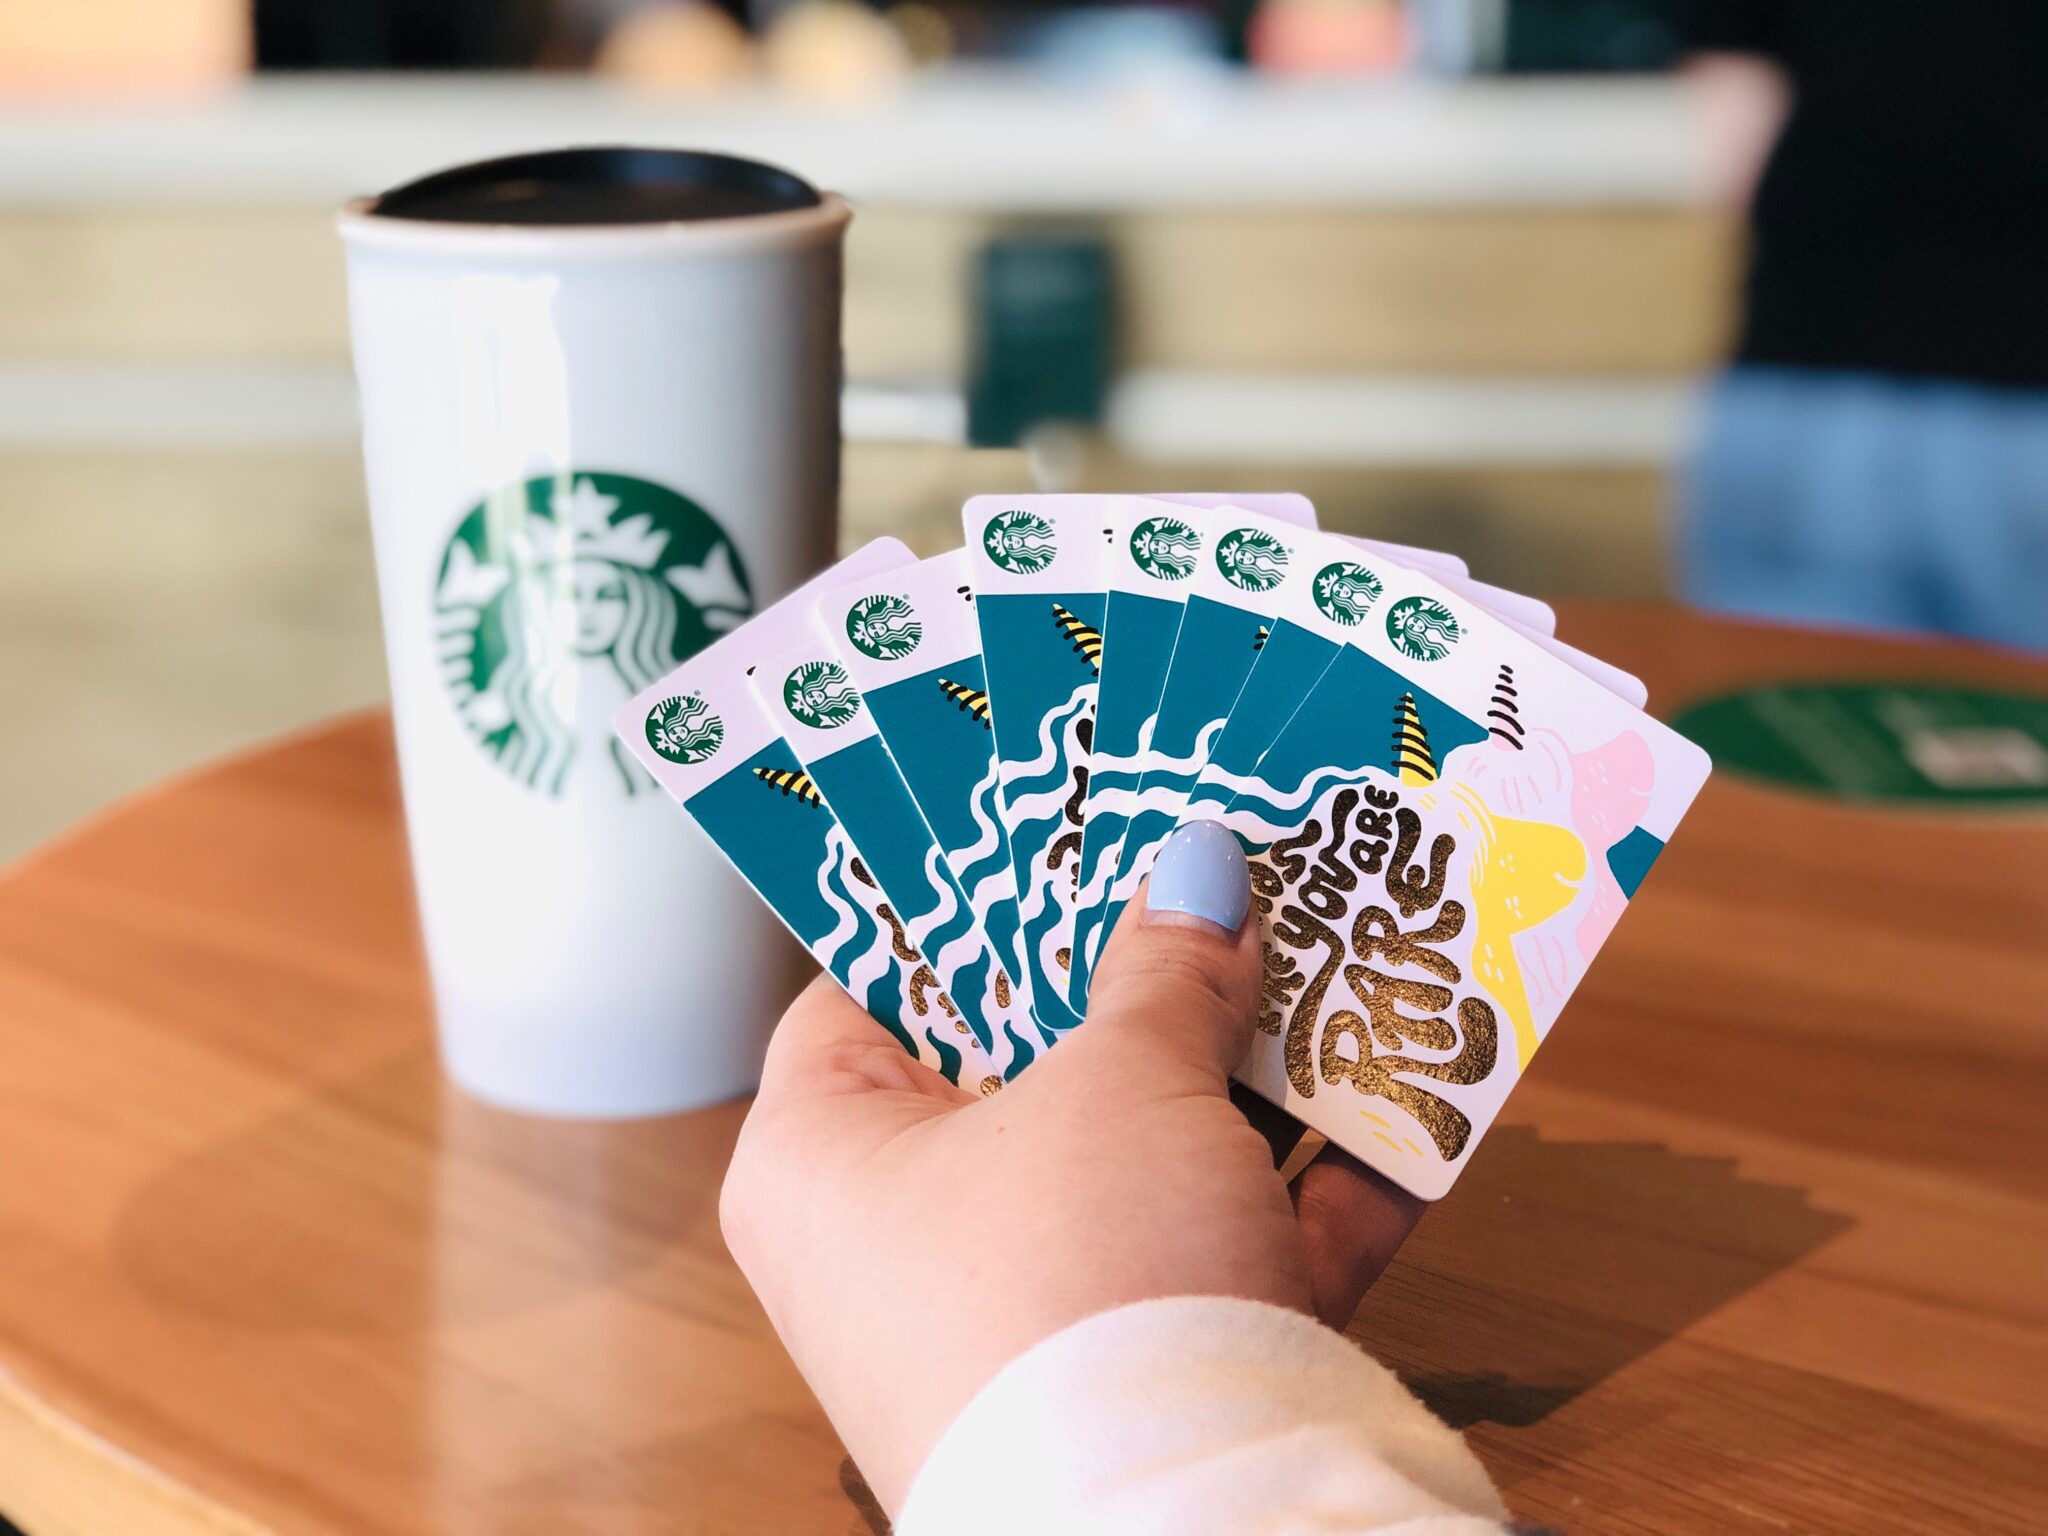 Αποστολή Starbucks Joy: Ένας οδηγός για την αποστολή δωροκαρτών μέσω κειμένου